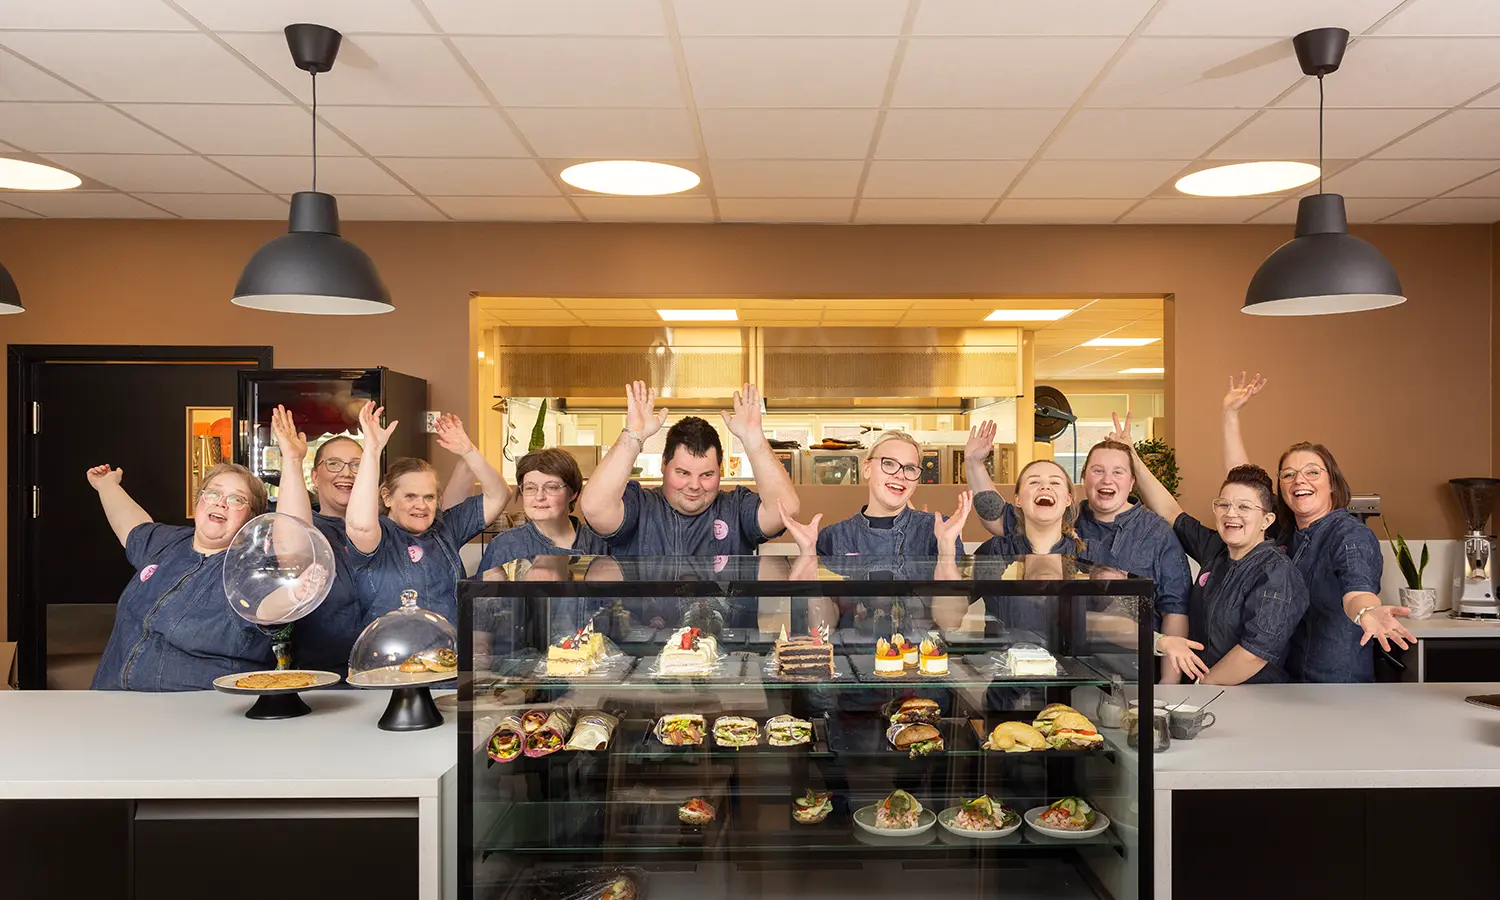 En gruppe mennesker fra Tunet Elverum står bak en glassmonter fylt med ulike matvarer, smiler og rekker opp hendene i en feiringsgest. De har på seg matchende blå uniformer.